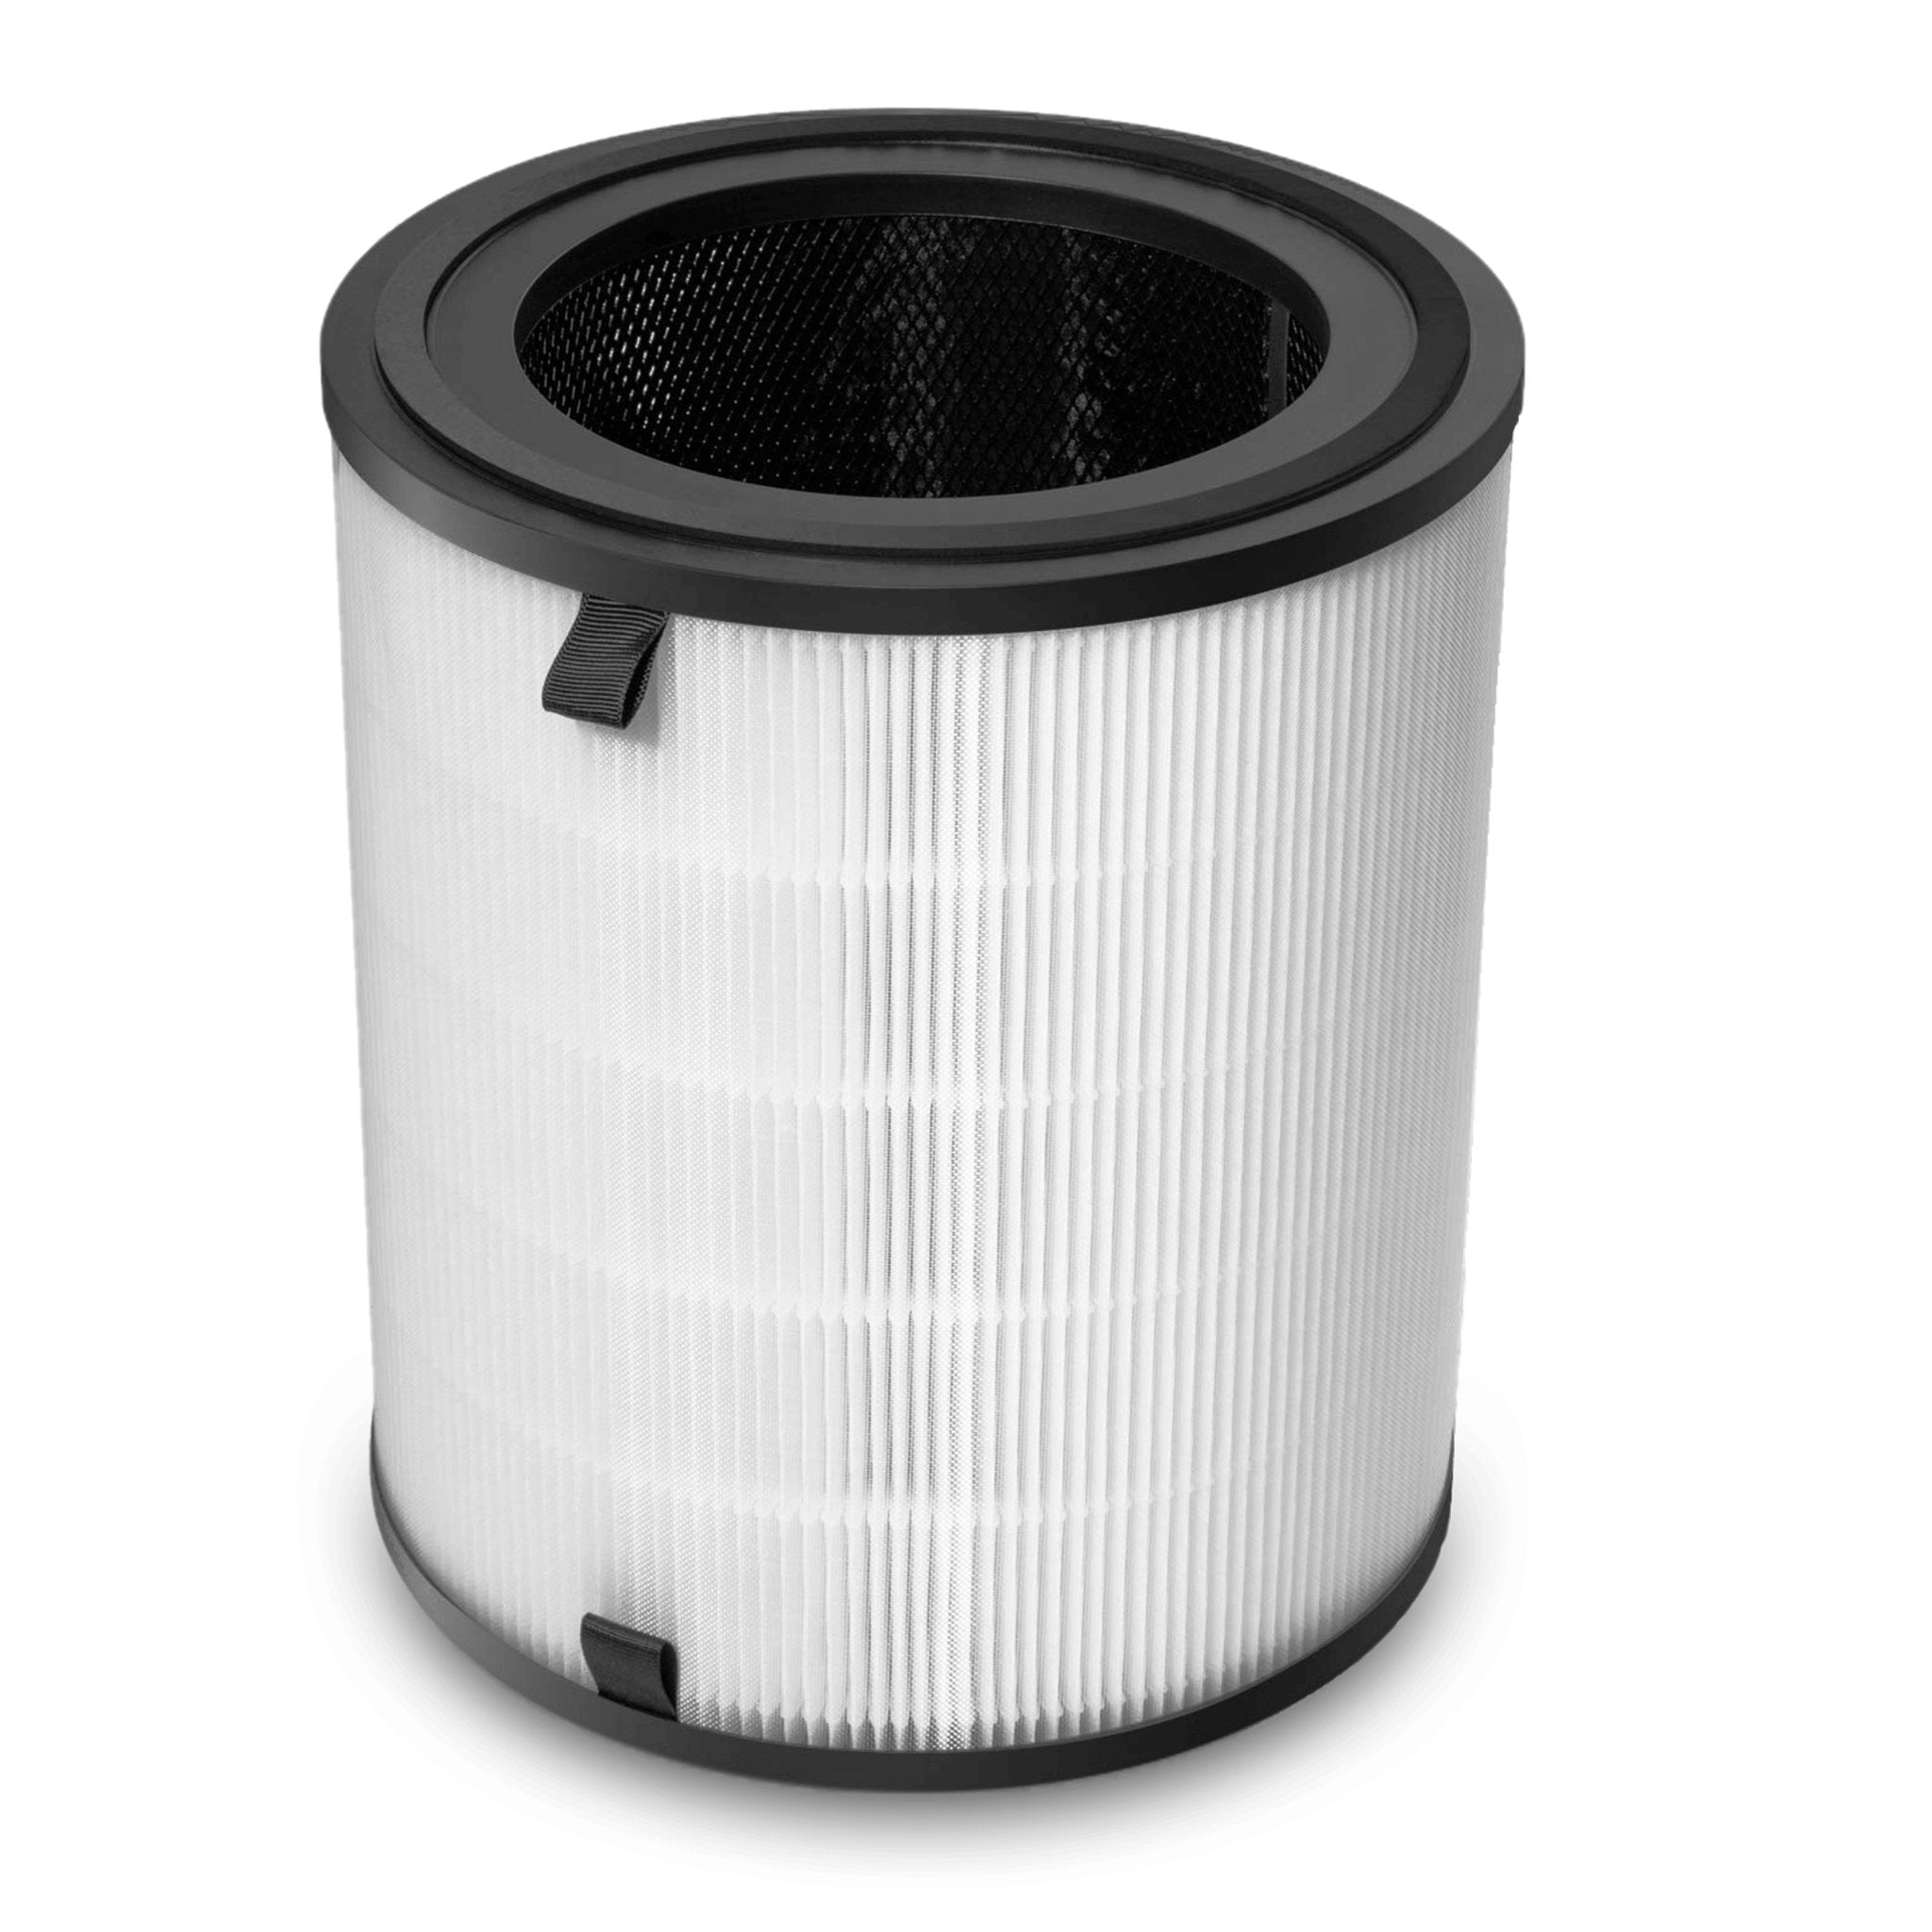 🔥 Levoit LV-H133 purificador de aire con filtro HEPA hasta 95m² y 400 cadr